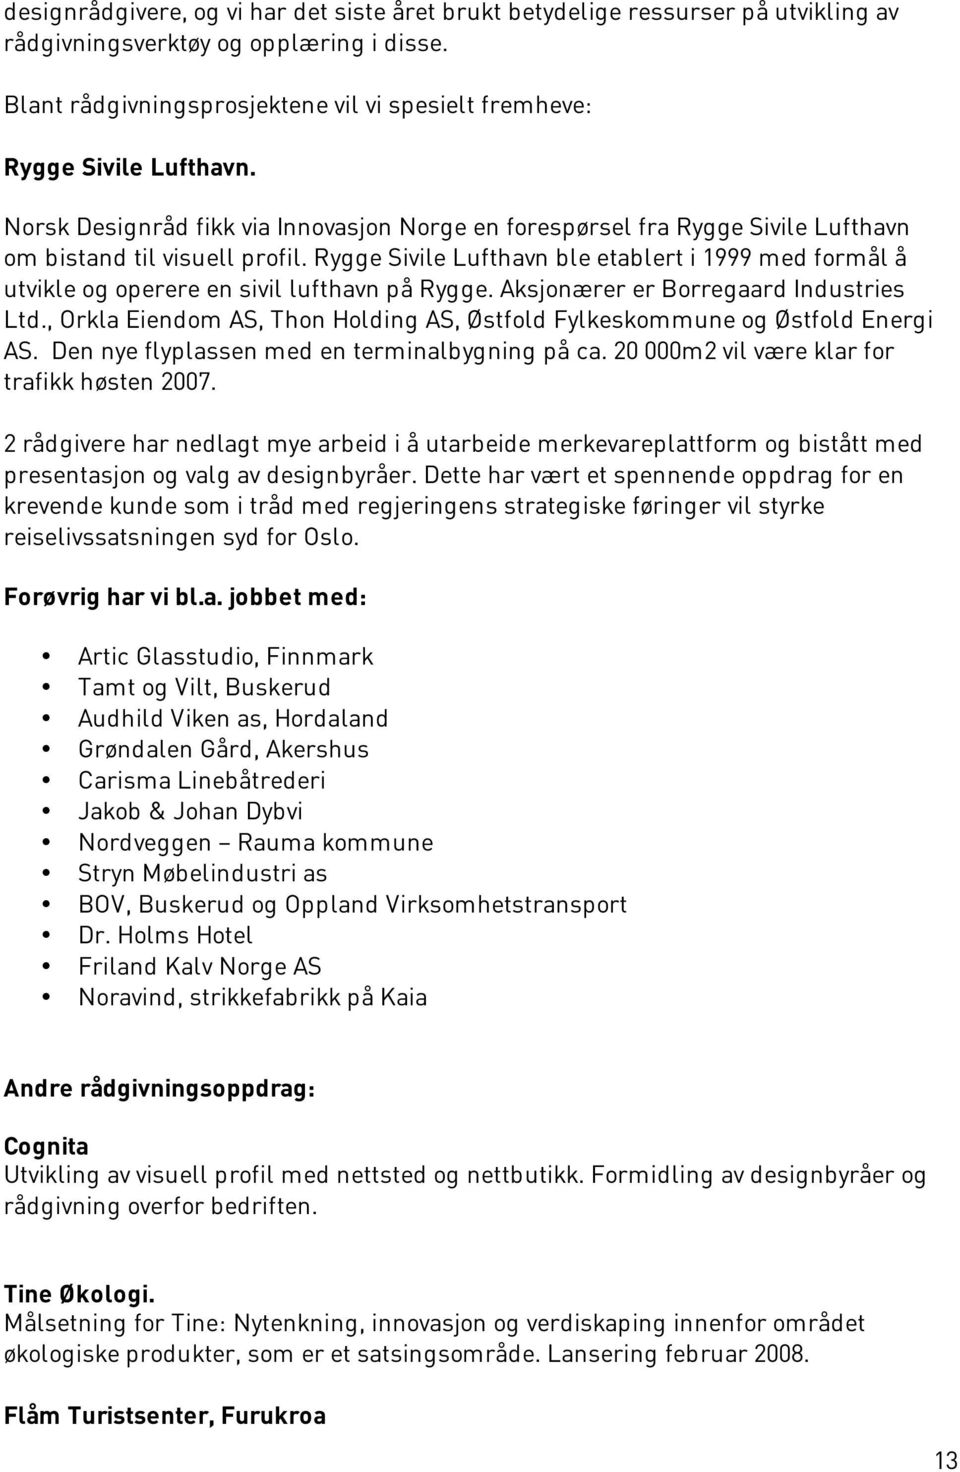 Rygge Sivile Lufthavn ble etablert i 1999 med formål å utvikle og operere en sivil lufthavn på Rygge. Aksjonærer er Borregaard Industries Ltd.